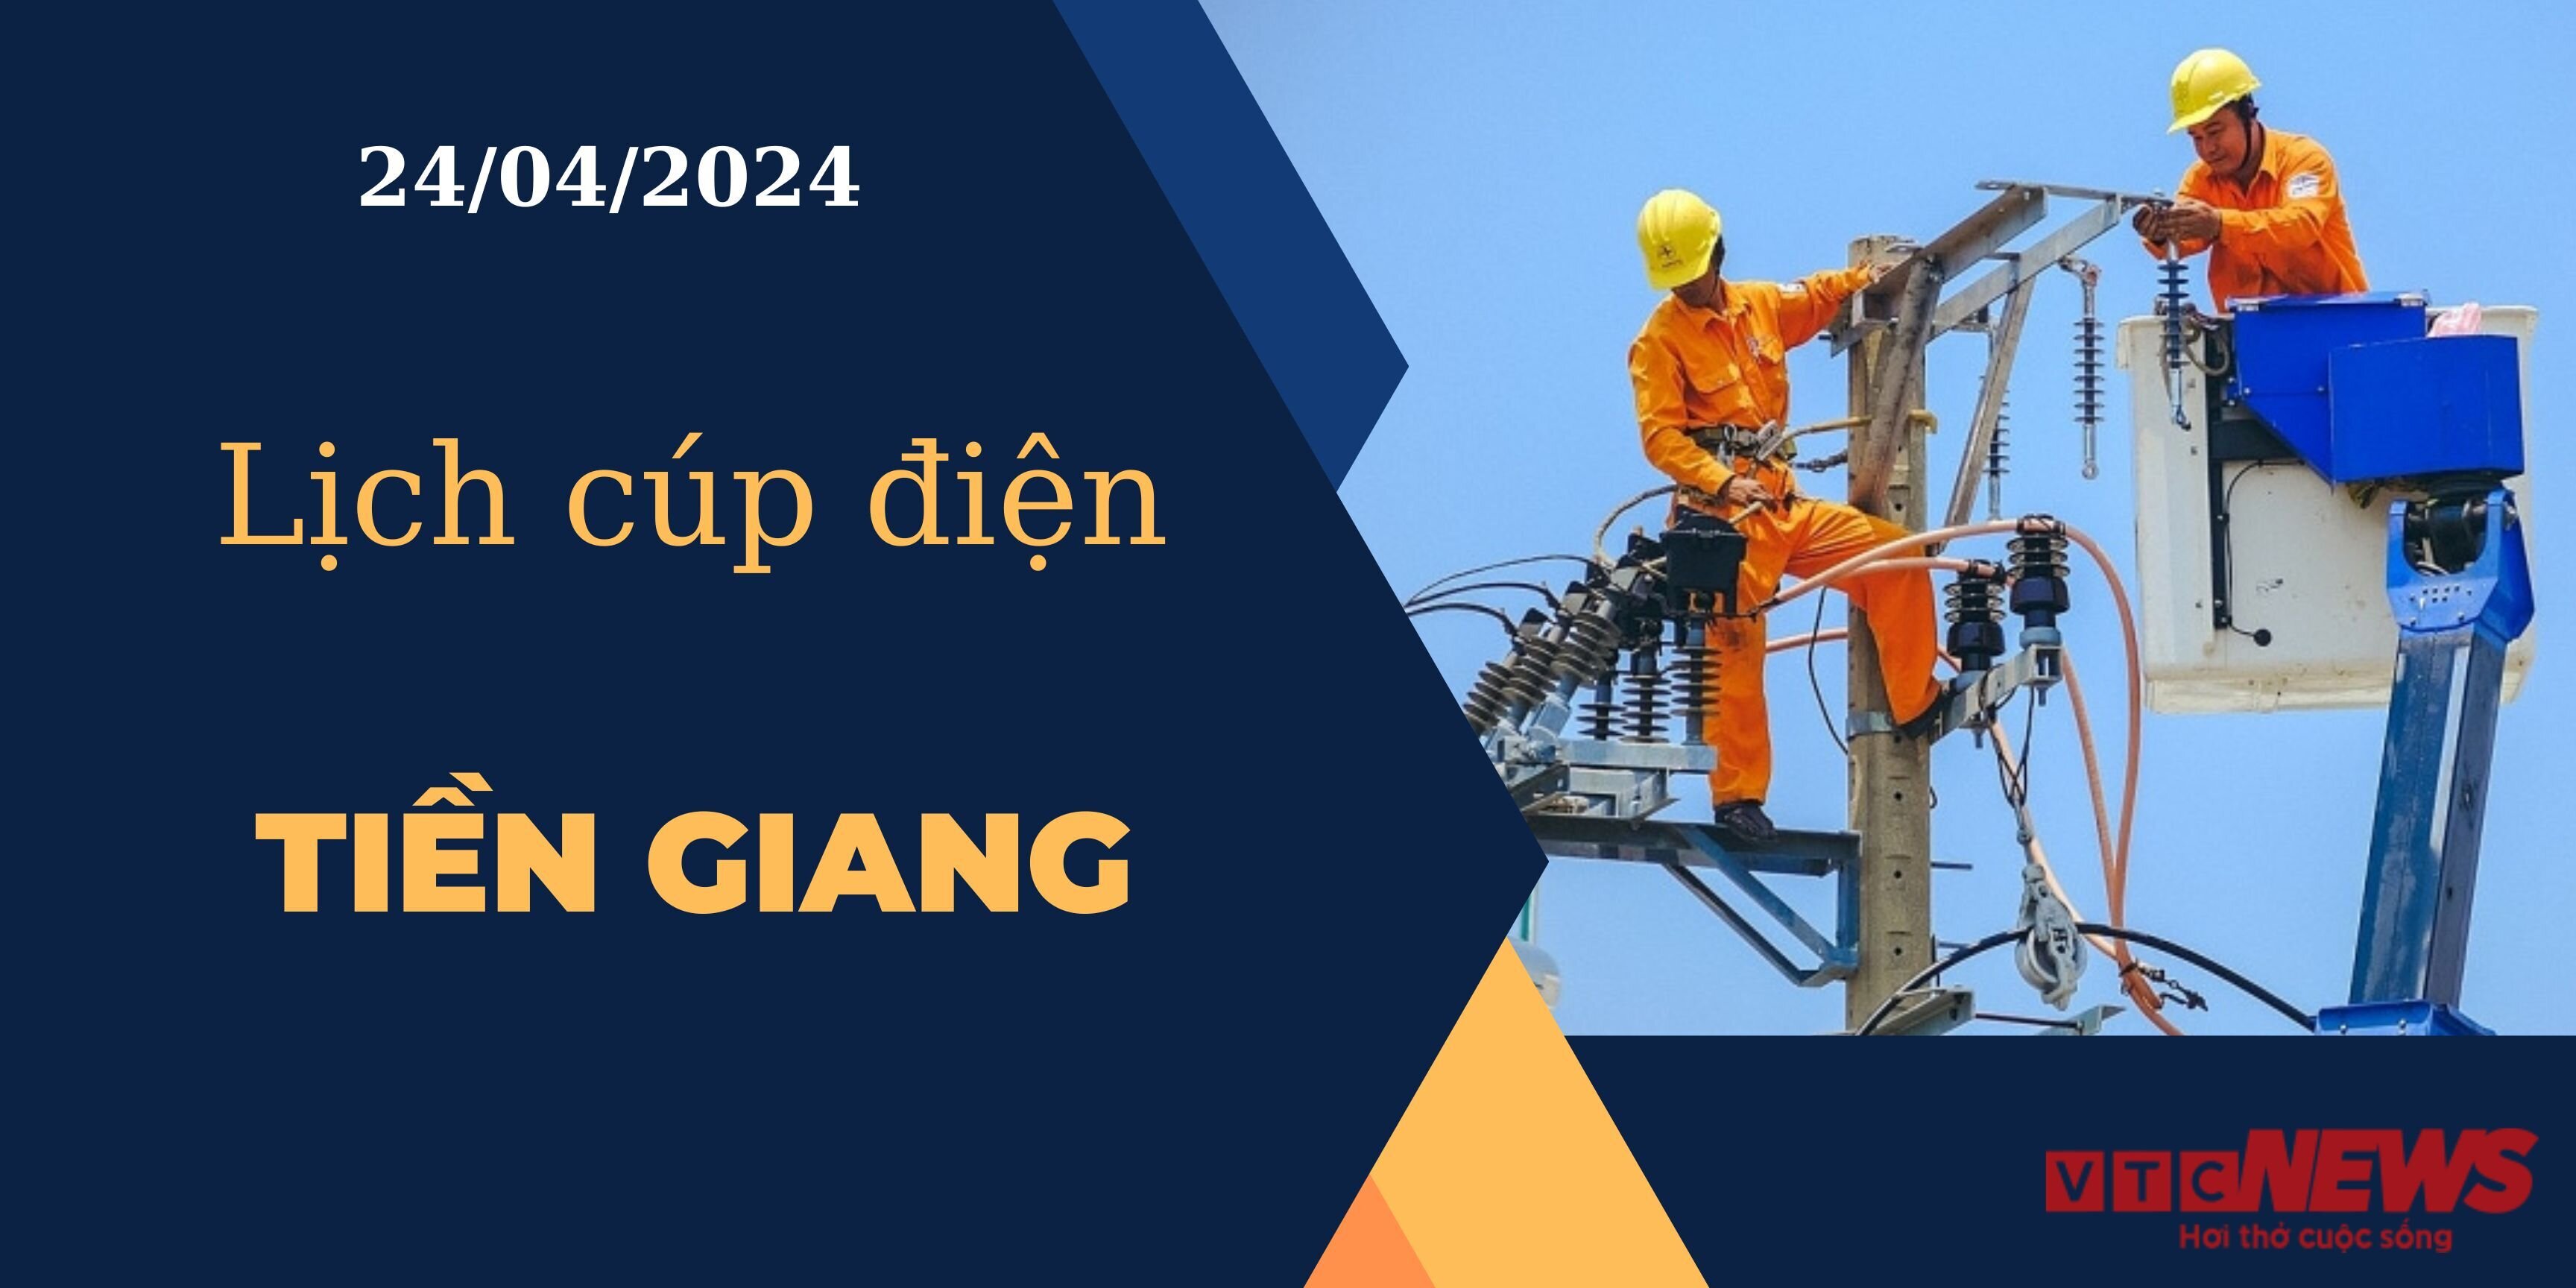 Lịch cúp điện hôm nay ngày 24/04/2024 tại Tiền Giang